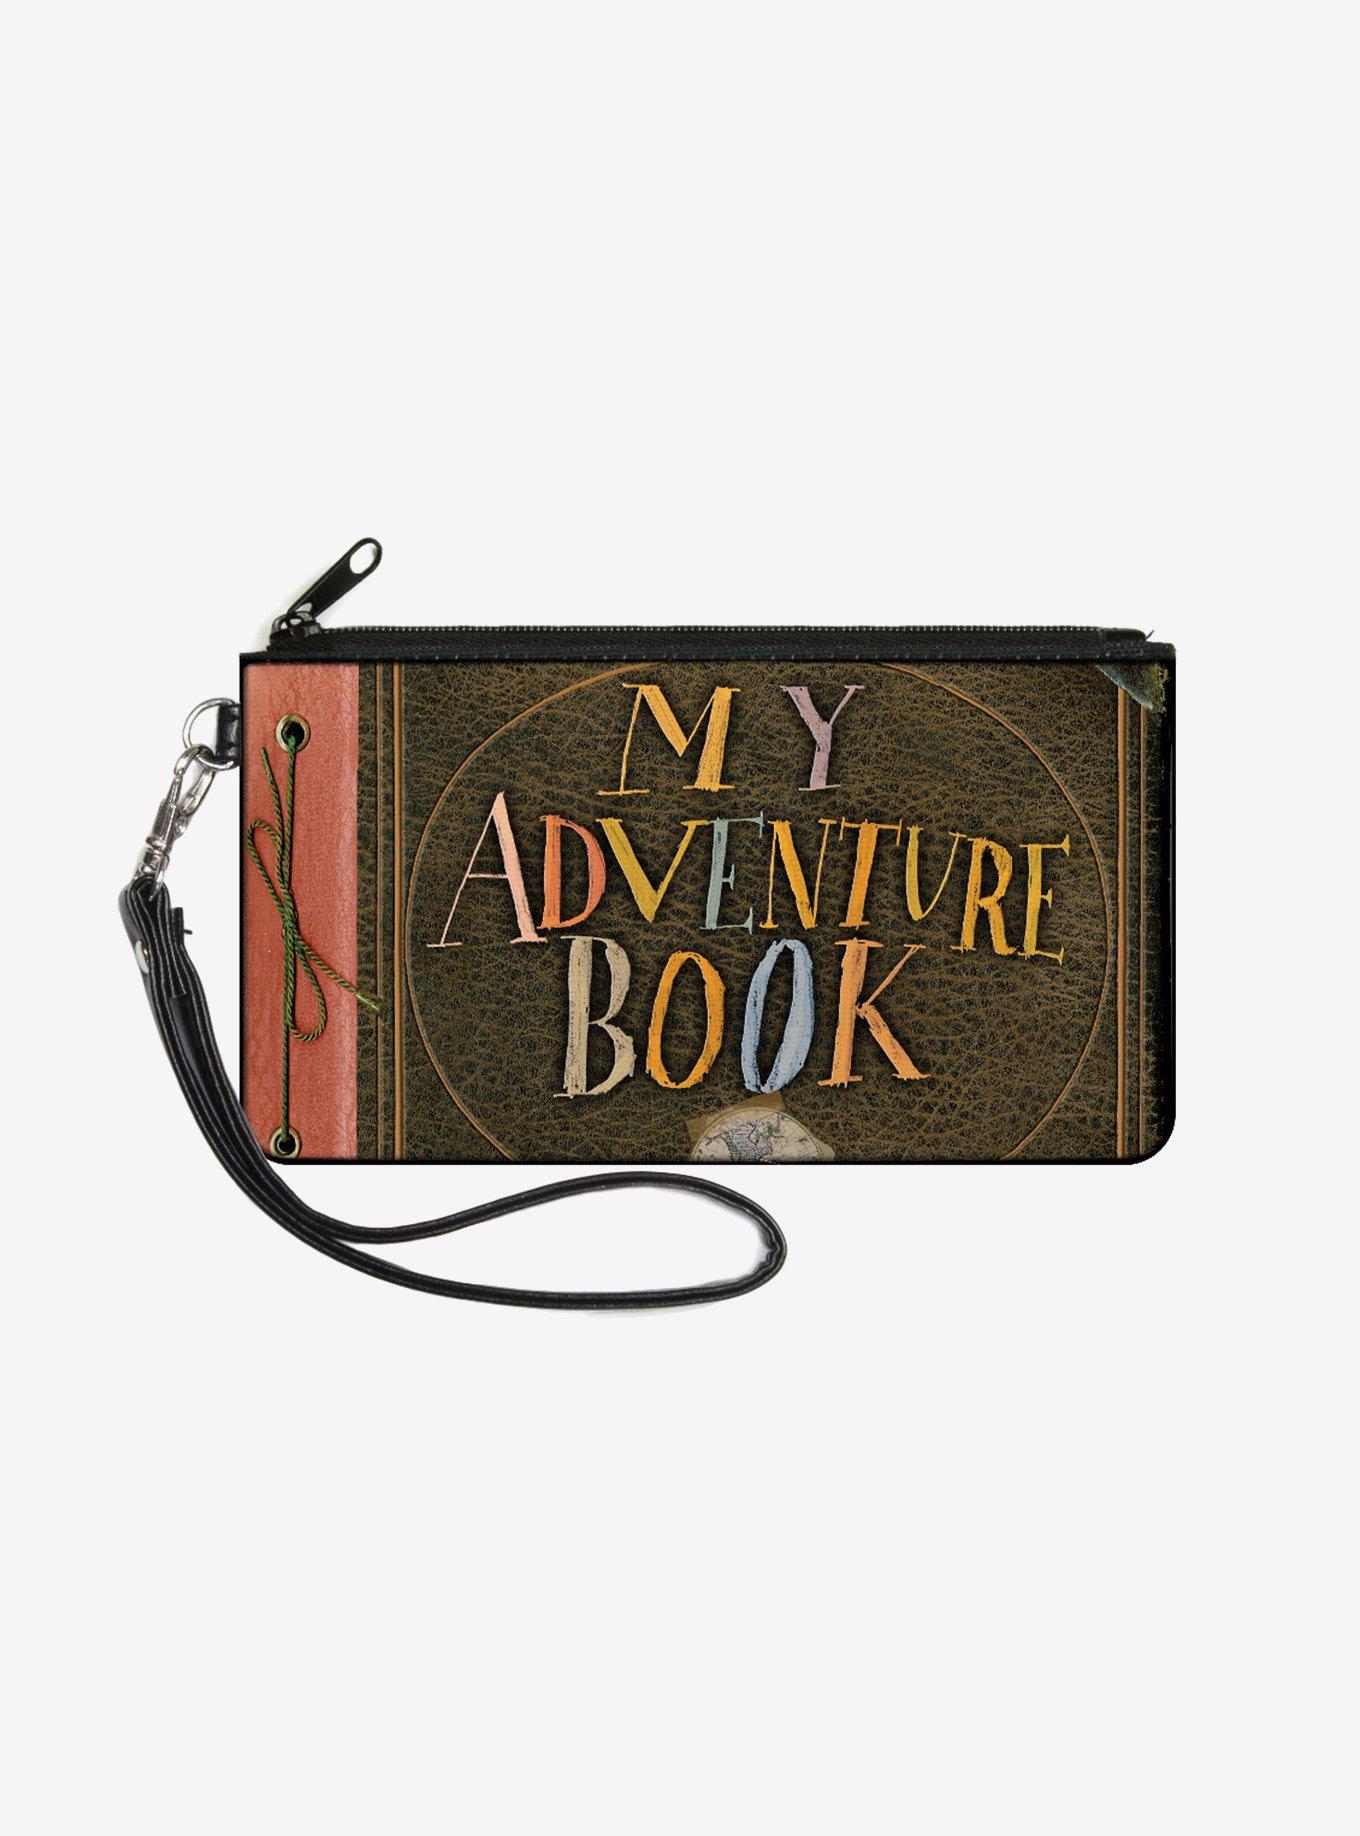 Disney Pixar Up My Adventure Book Zip Clutch Wallet